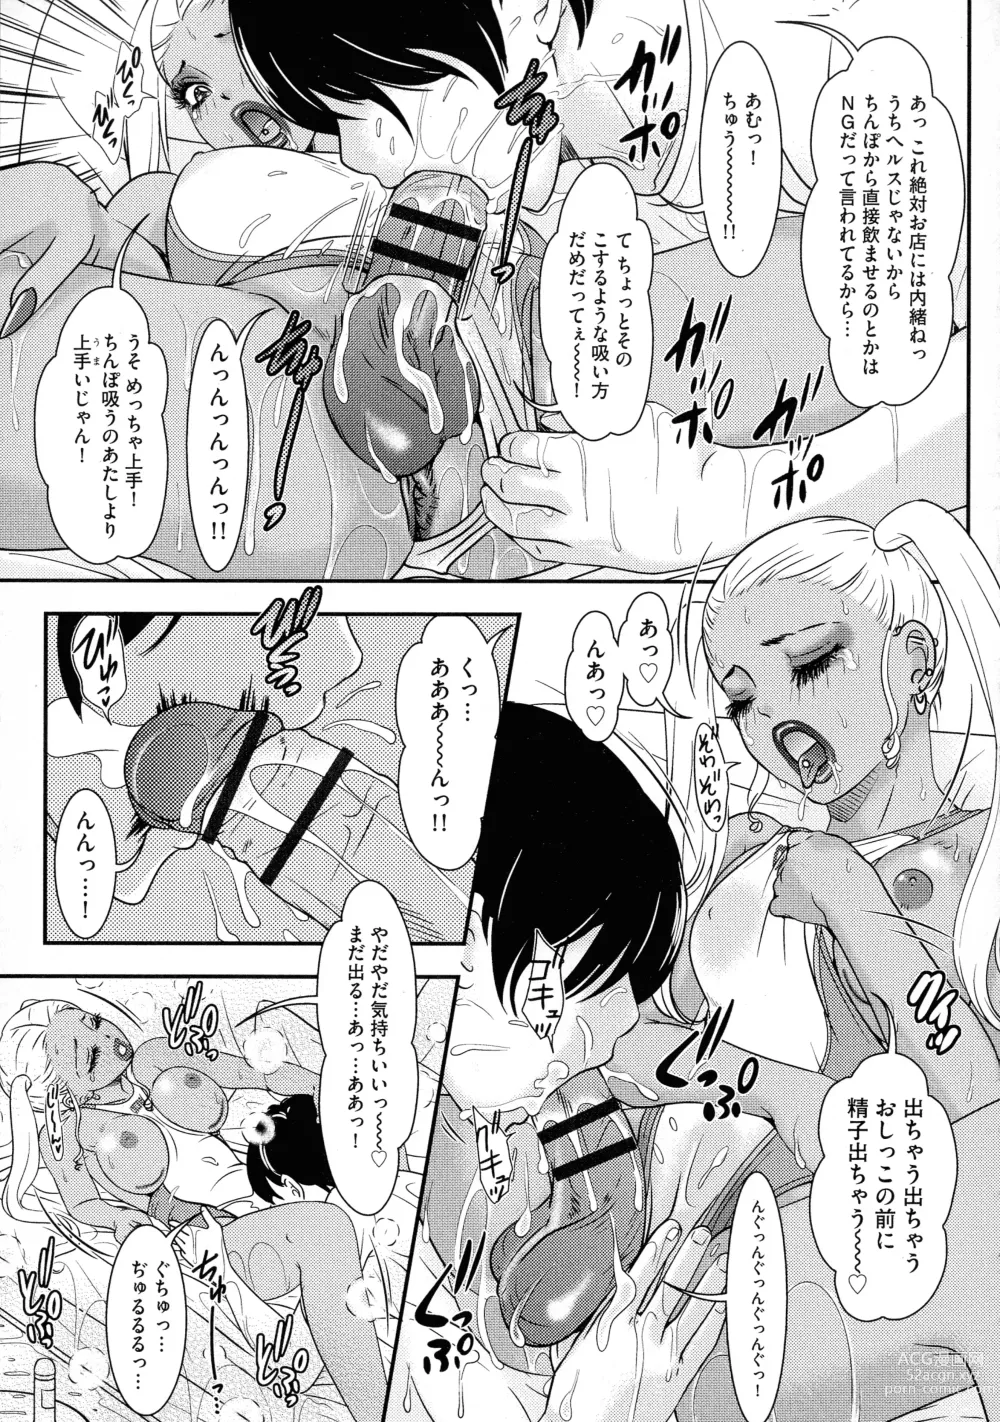 Page 183 of manga Shemale Heaven!